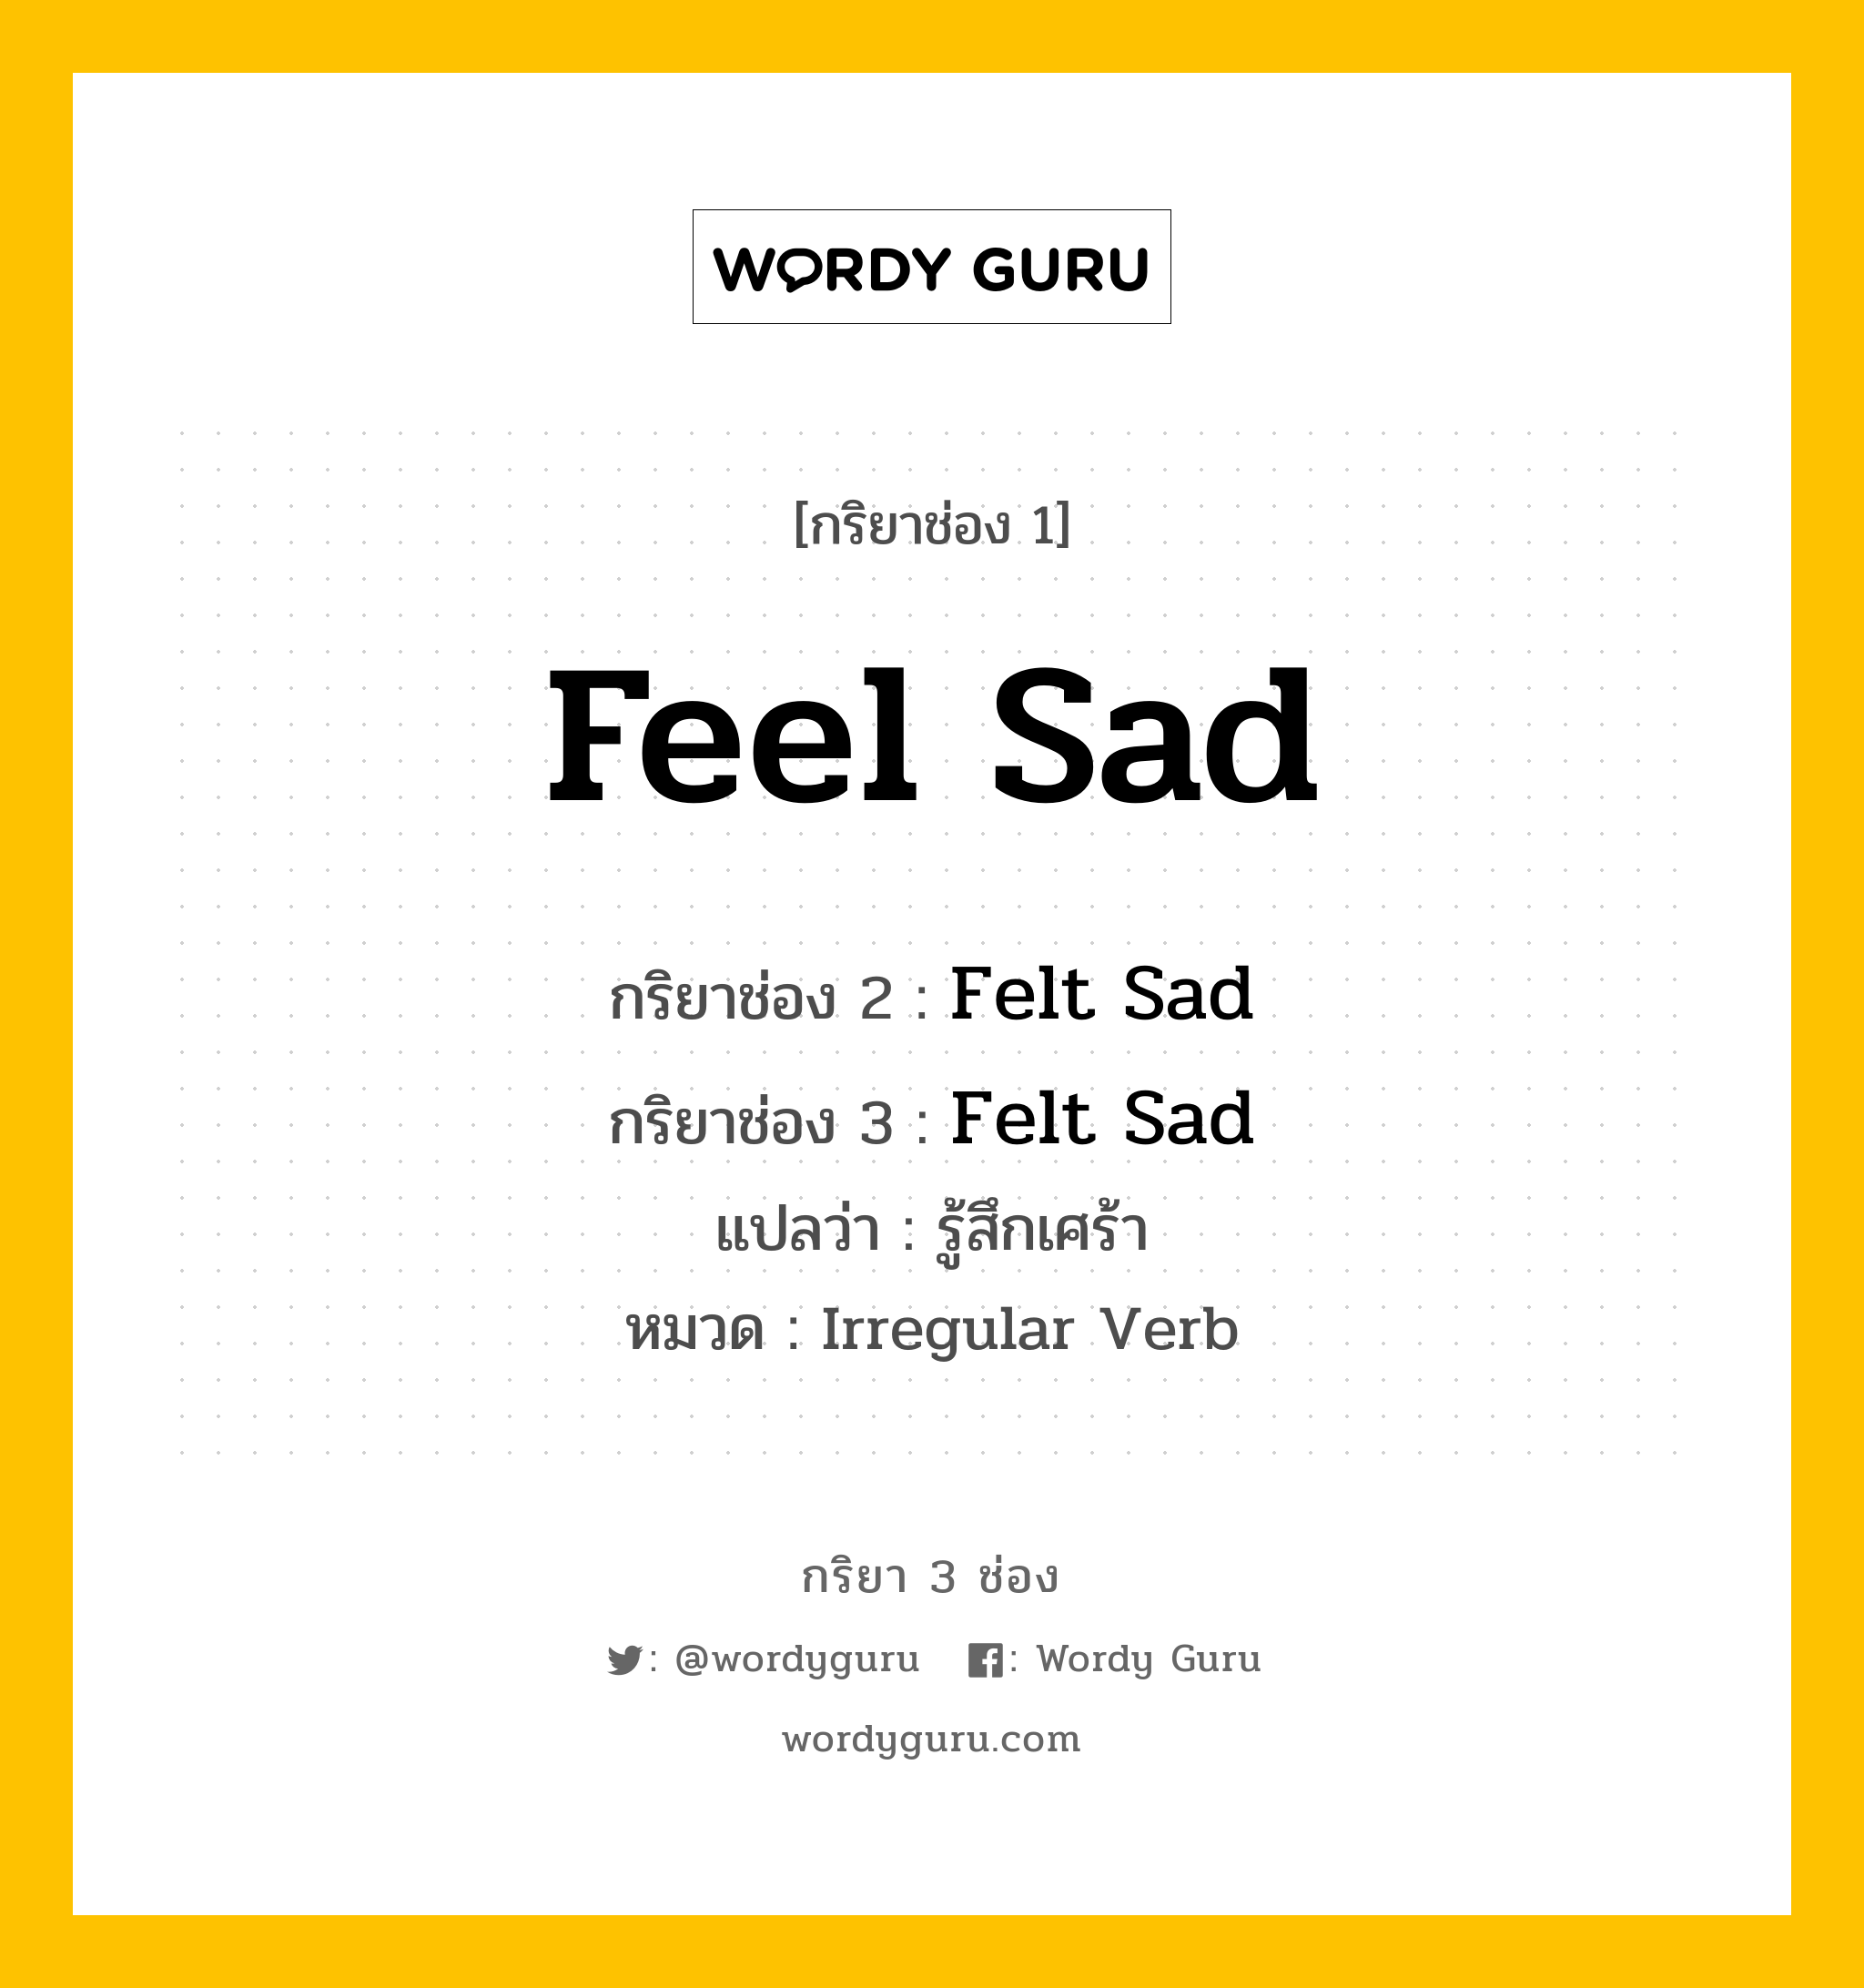 กริยา 3 ช่อง: Feel Sad ช่อง 2 Feel Sad ช่อง 3 คืออะไร, กริยาช่อง 1 Feel Sad กริยาช่อง 2 Felt Sad กริยาช่อง 3 Felt Sad แปลว่า รู้สึกเศร้า หมวด Irregular Verb หมวด Irregular Verb